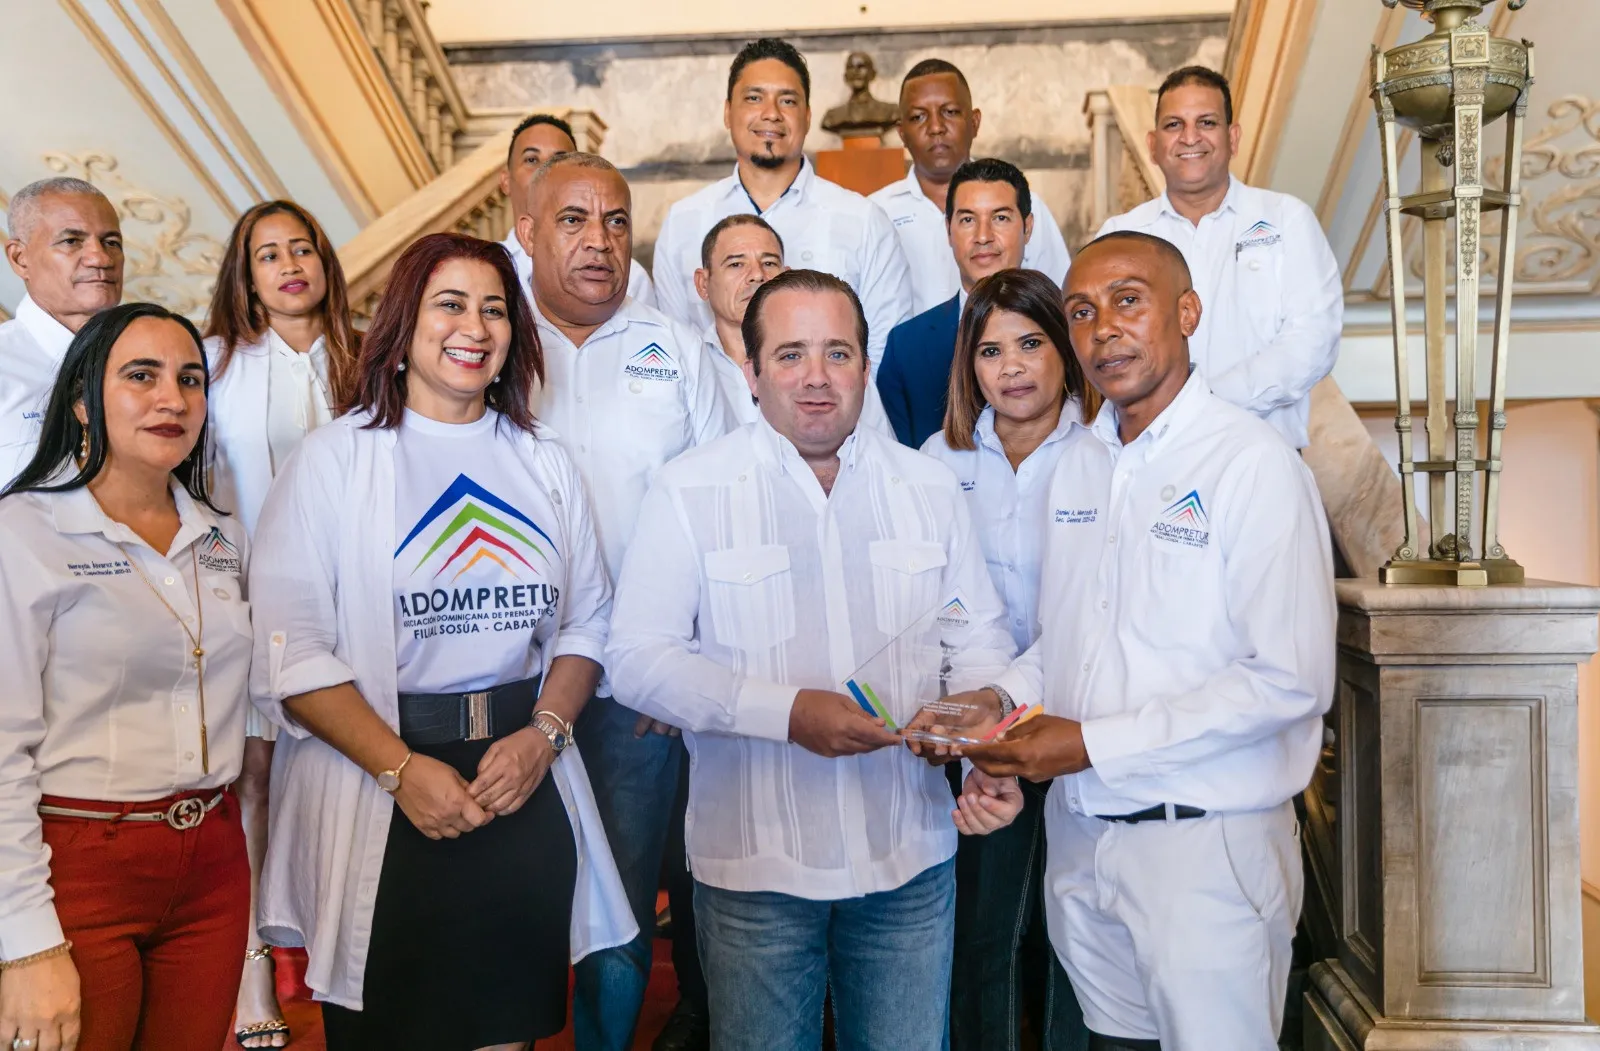 Adompretur Sosúa-Cabarete entrega reconocimiento a José Paliza por su apoyo al turismo